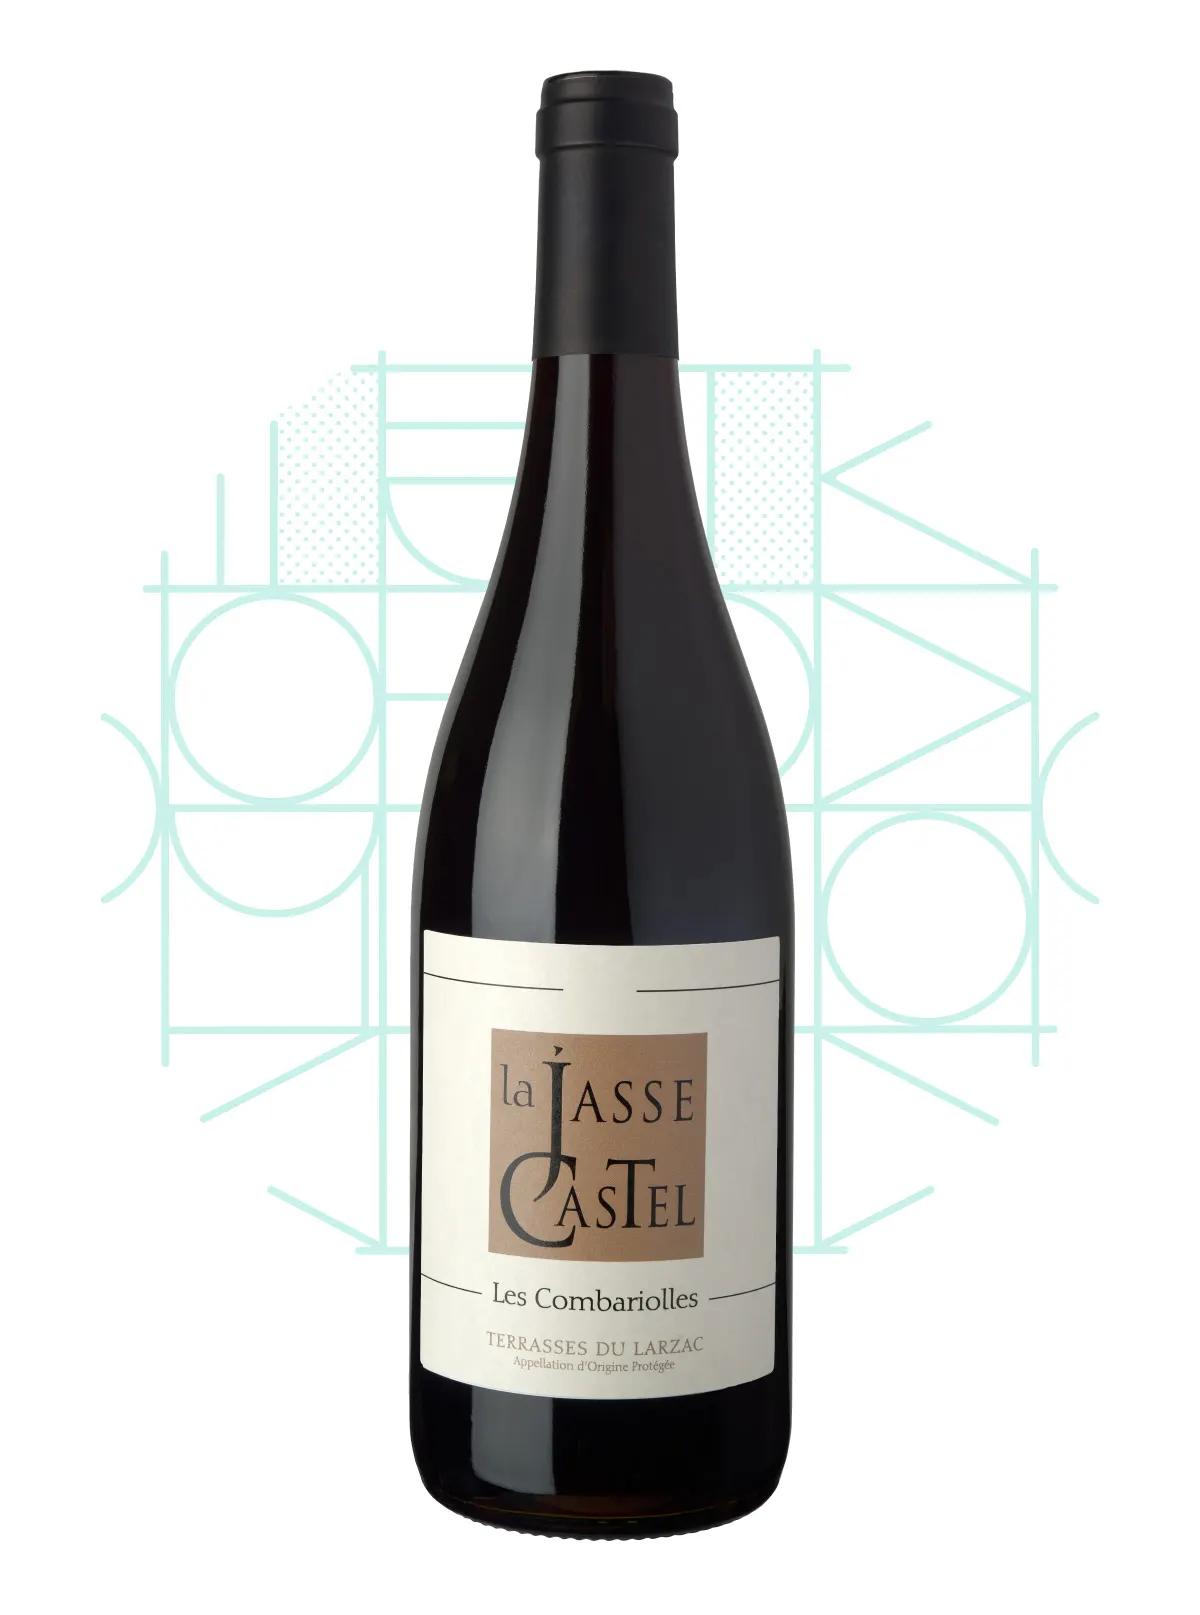 La Jasse Castel - Vin rouge bio - Cuvée Les Combariolles